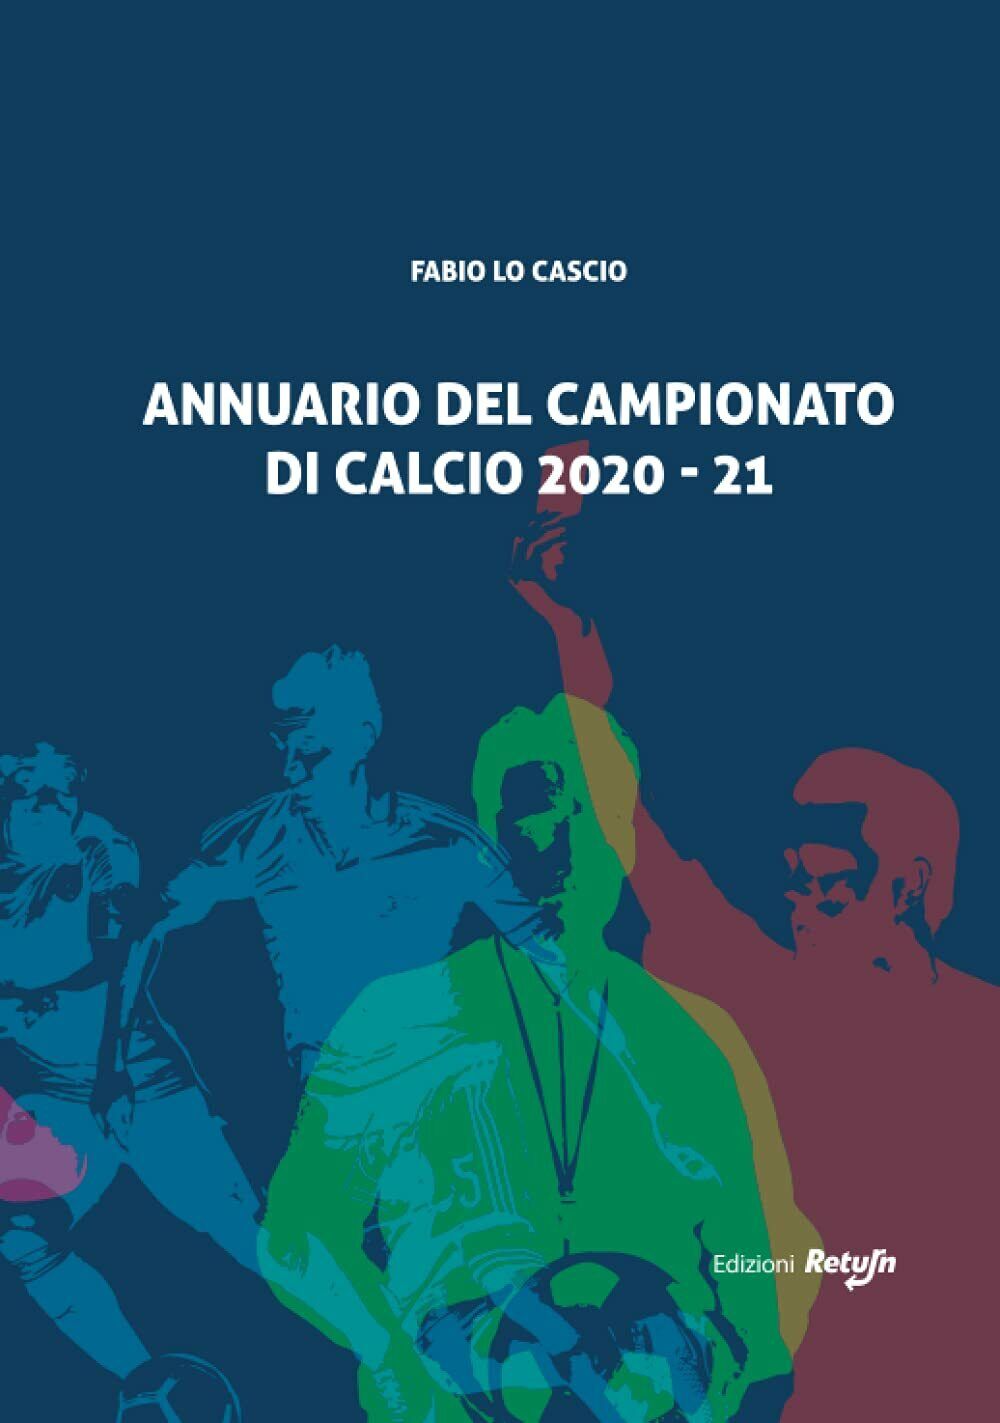 ANNUARIO DEL CAMPIONATO DI CALCIO 2020-21- Fabio Lo Cascio - Return, 2021